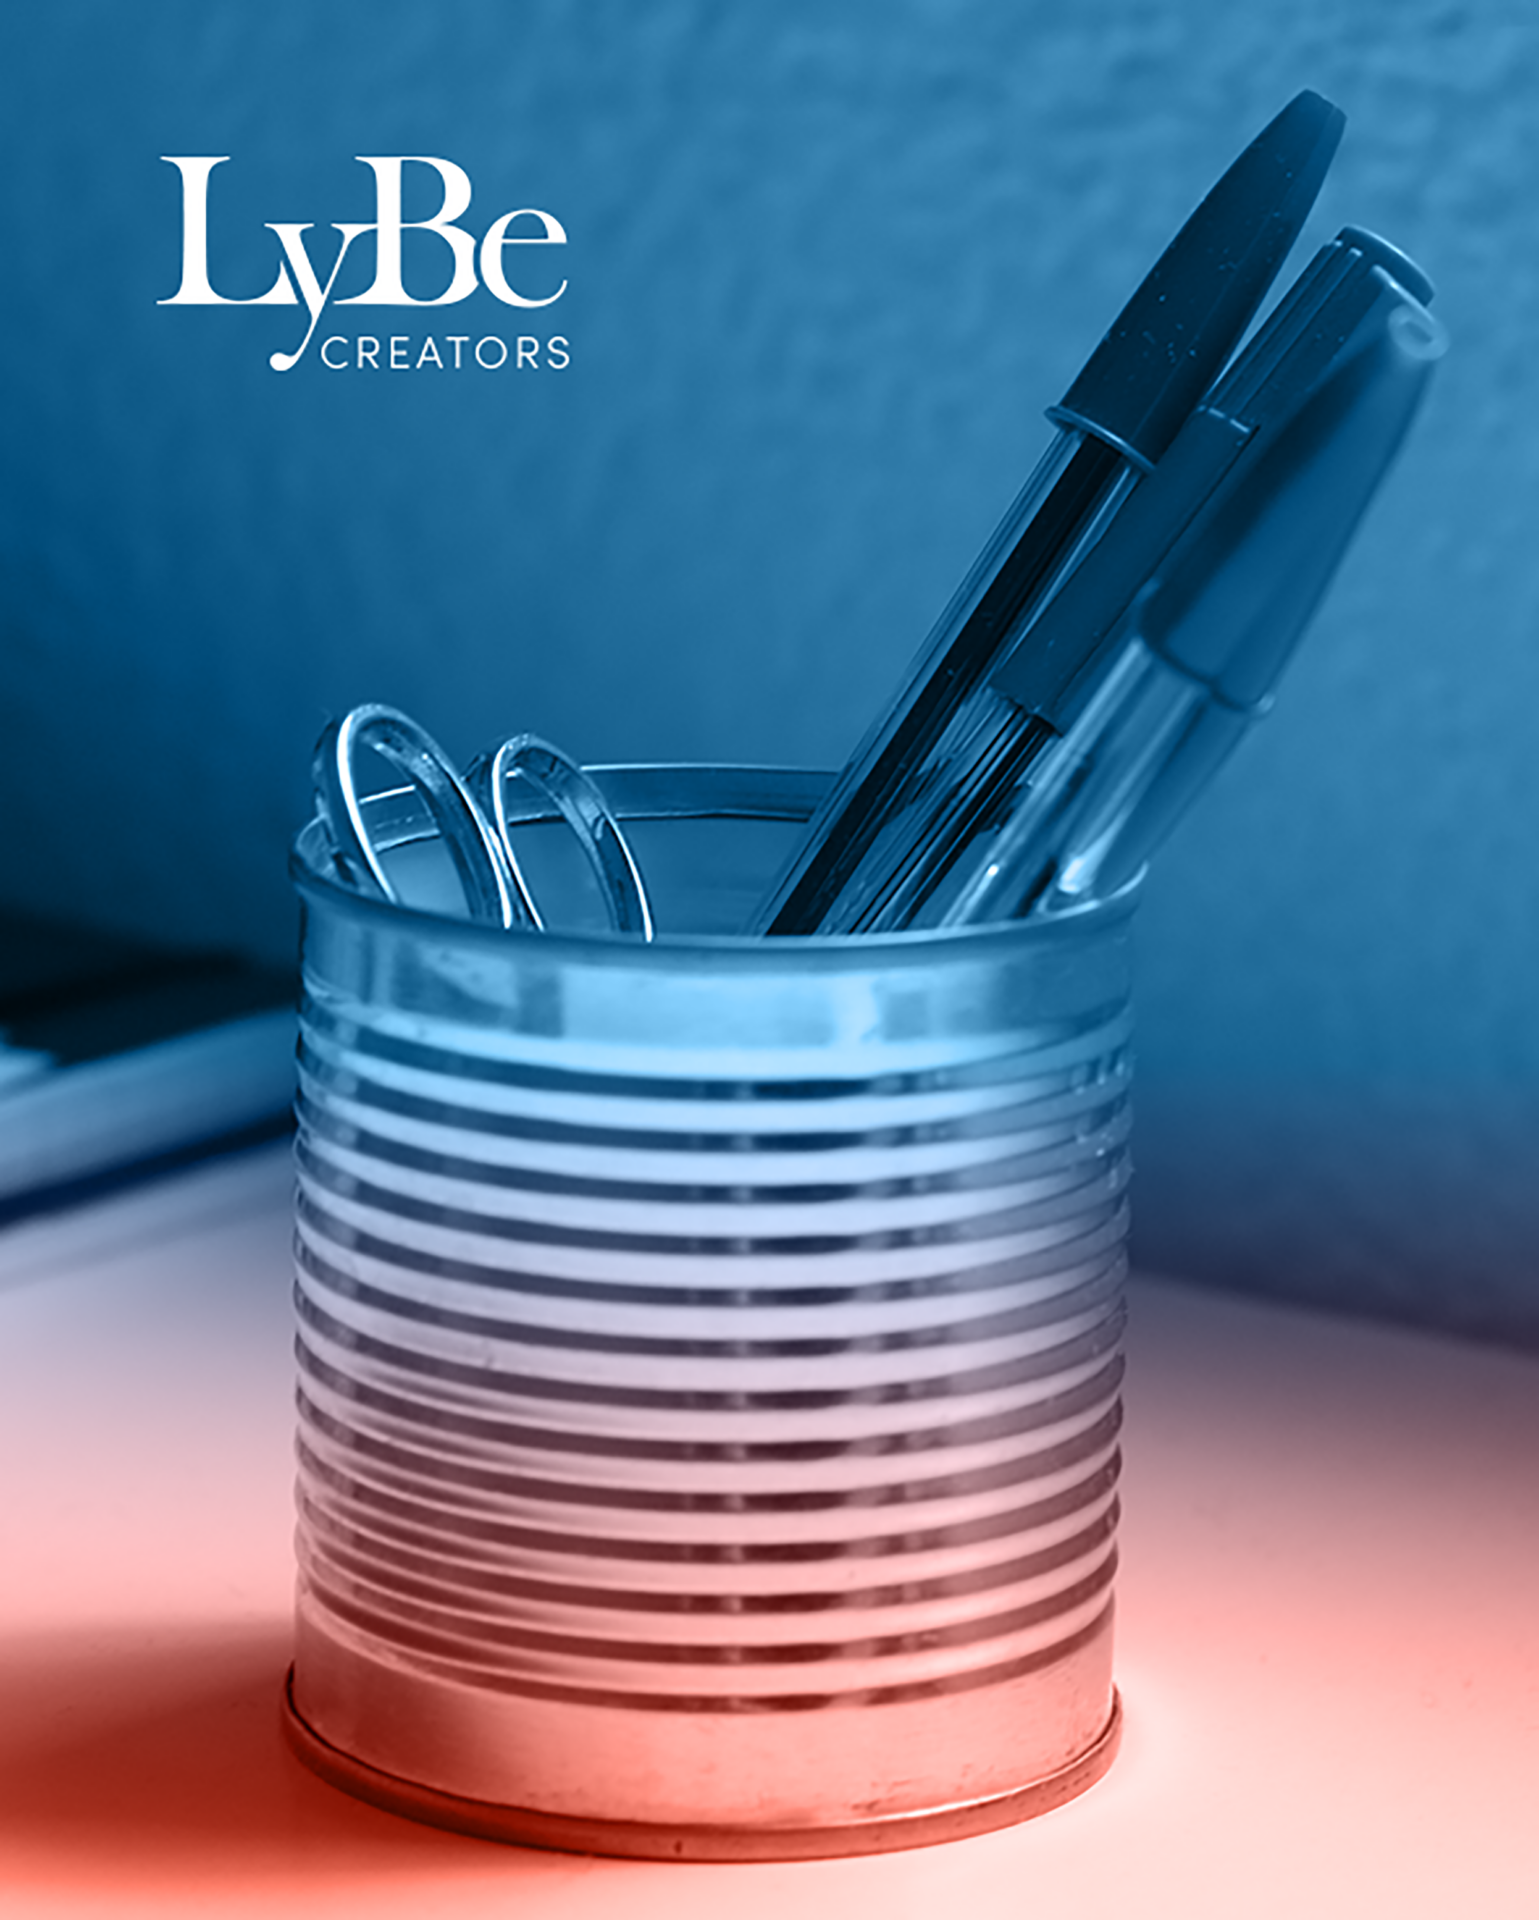 LyBe Creators – desarrollo web y diseño gráfico